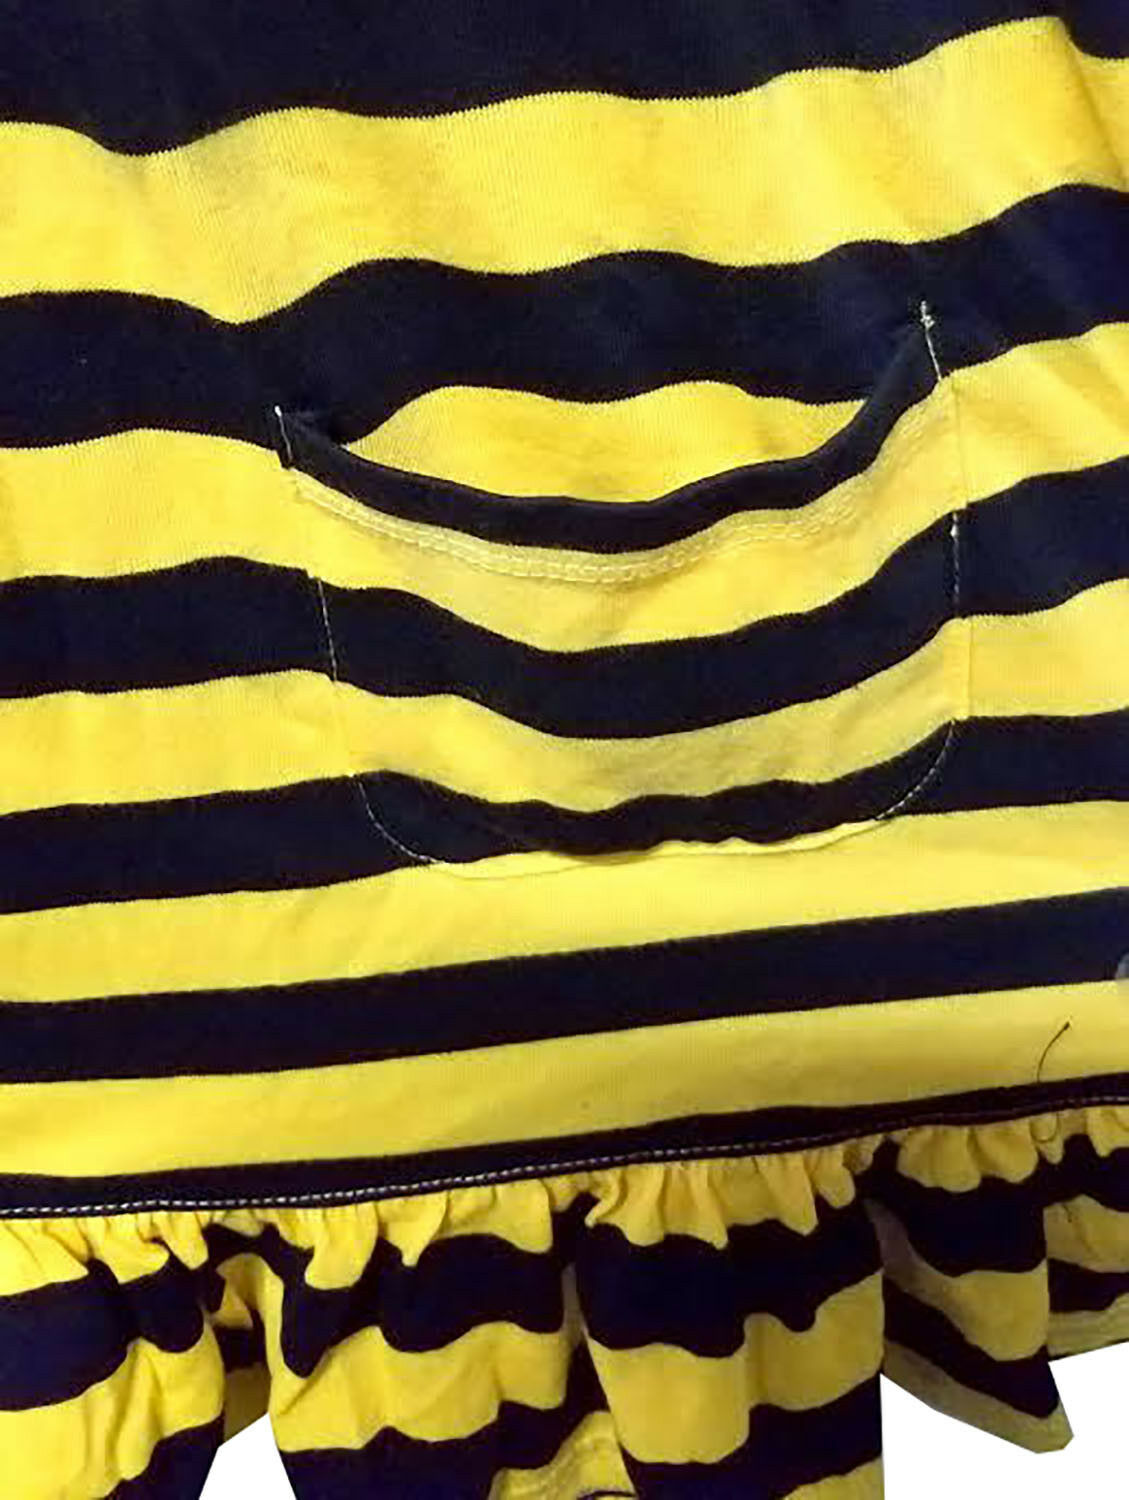 Missouri Tigers Tiger Stripe Tube Top Dress, Yellow & Black, XL | eBay